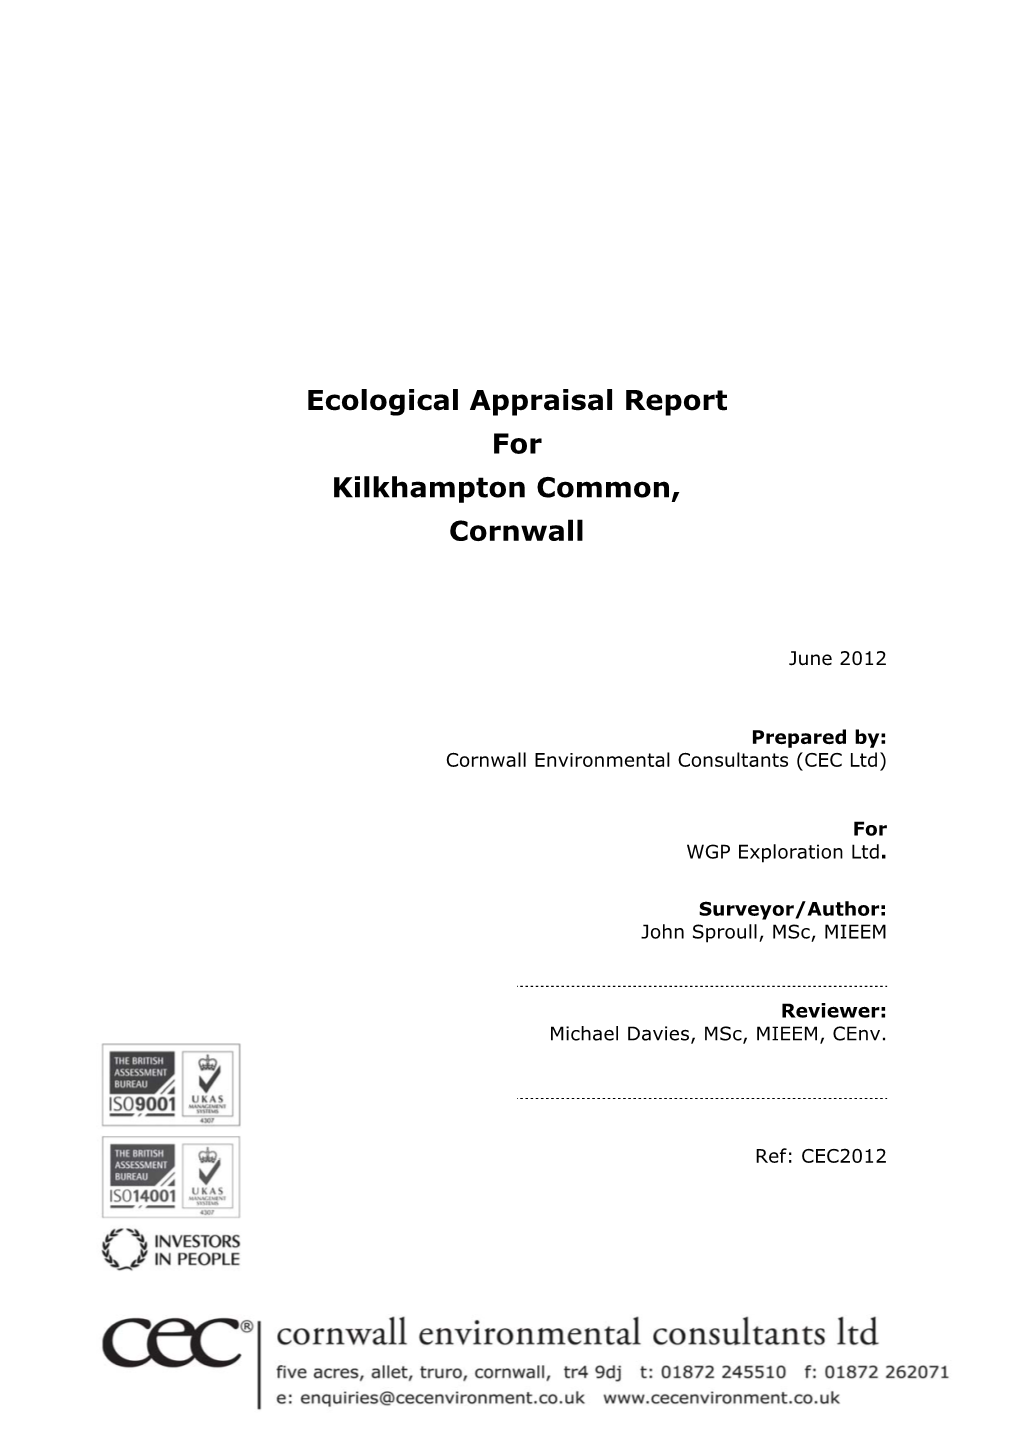 Ecological Appraisal Report for Kilkhampton Common, Cornwall